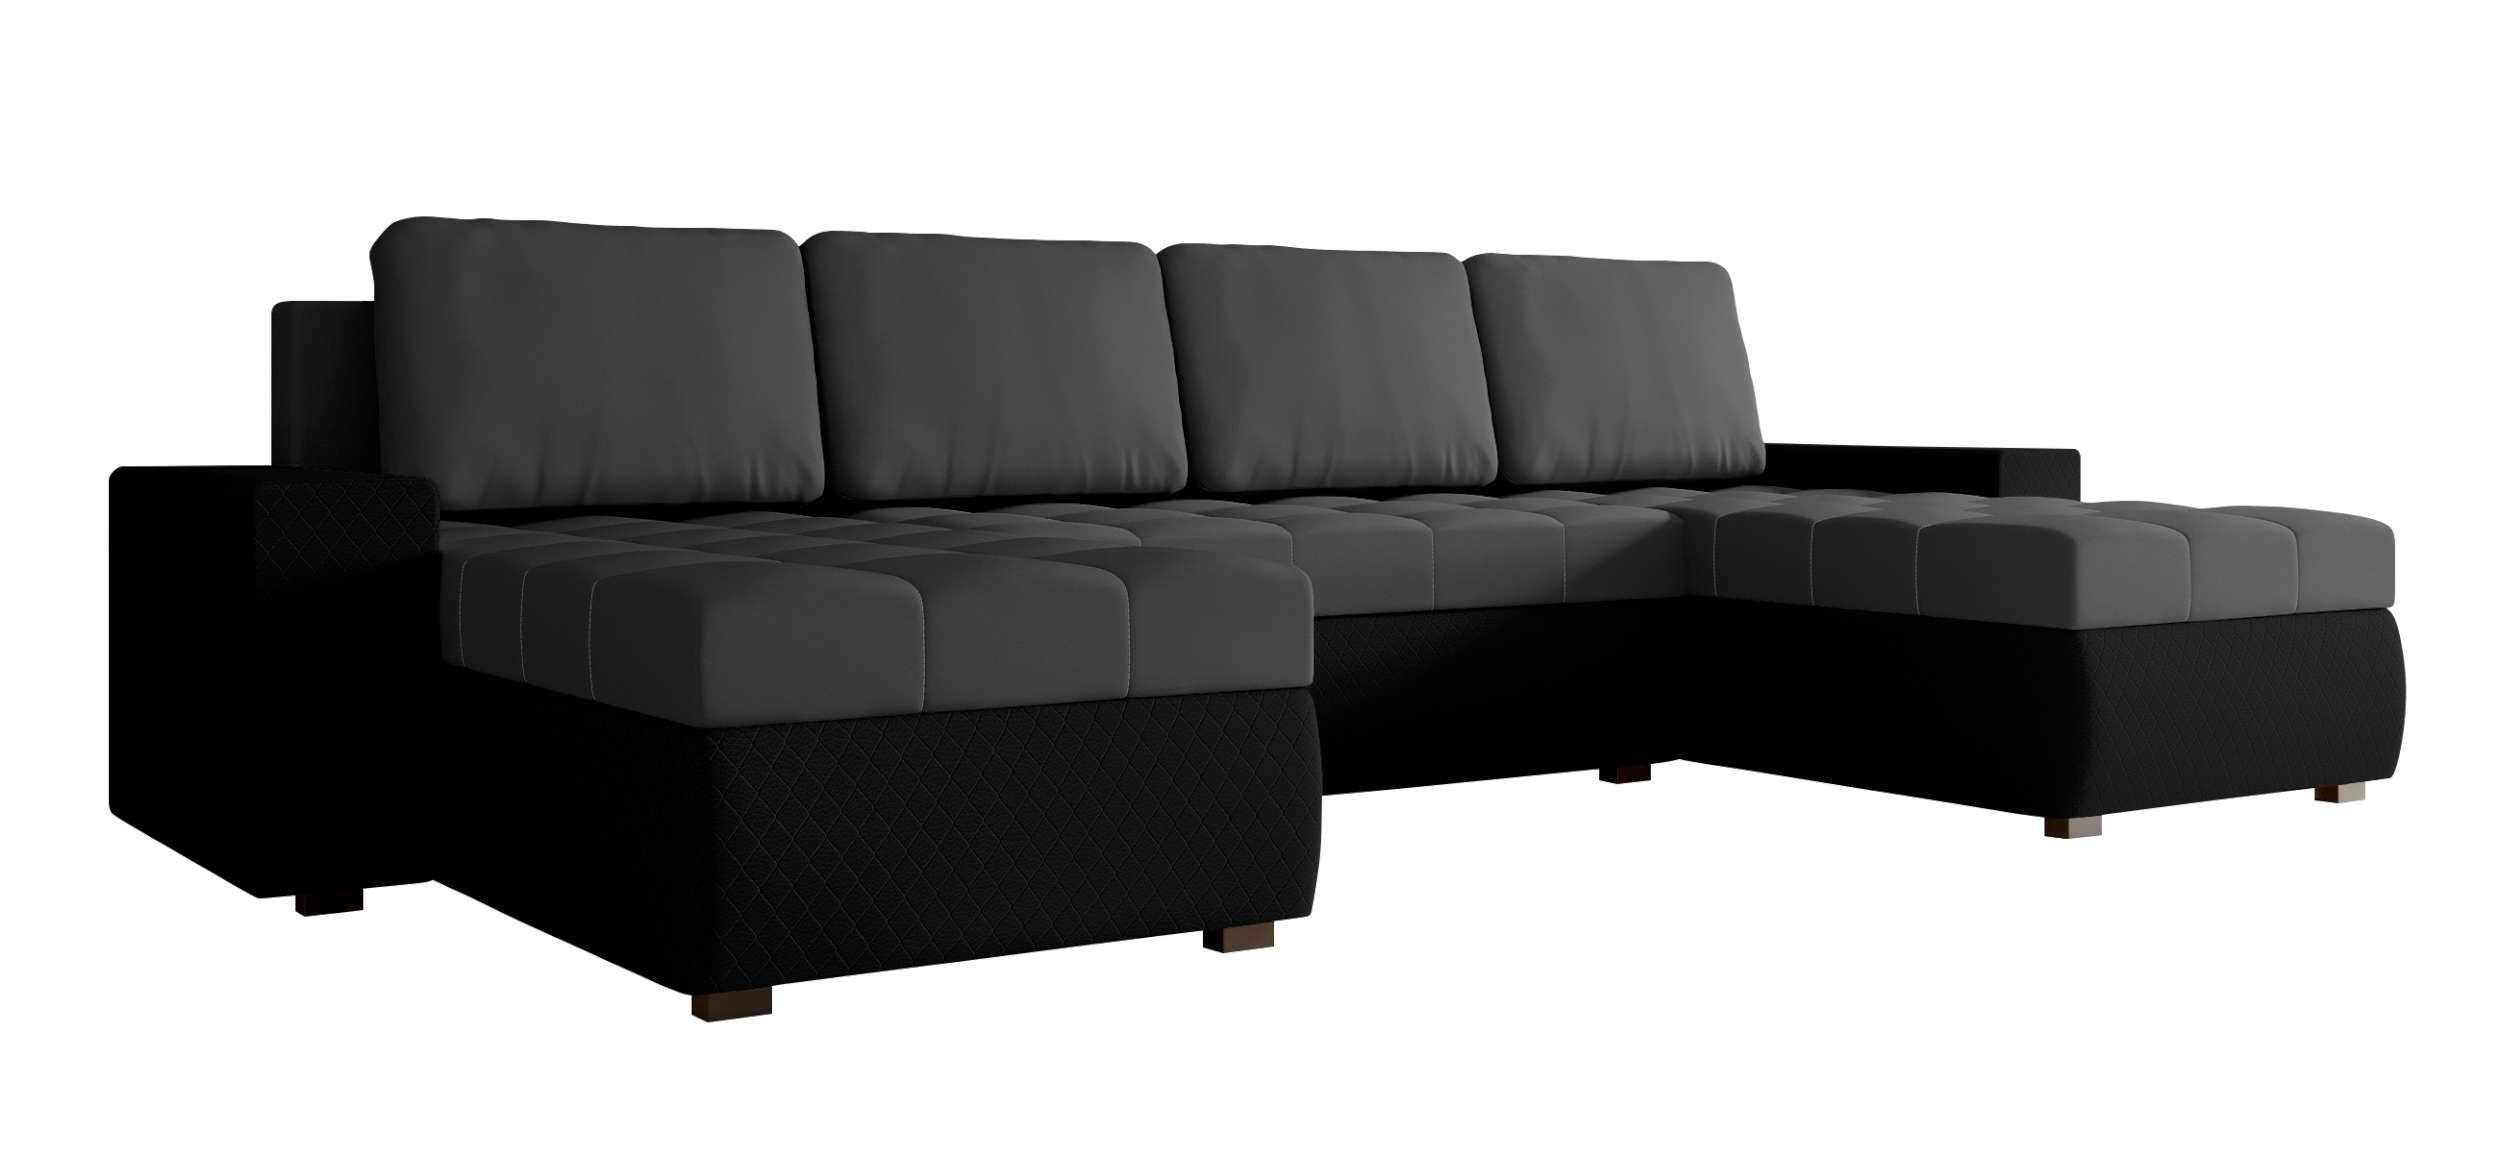 Wohnlandschaft Bettfunktion, Sitzkomfort, U-Form, mit Bettkasten, mit Modern Eckcouch, Sofa, Stylefy Amelia, Design